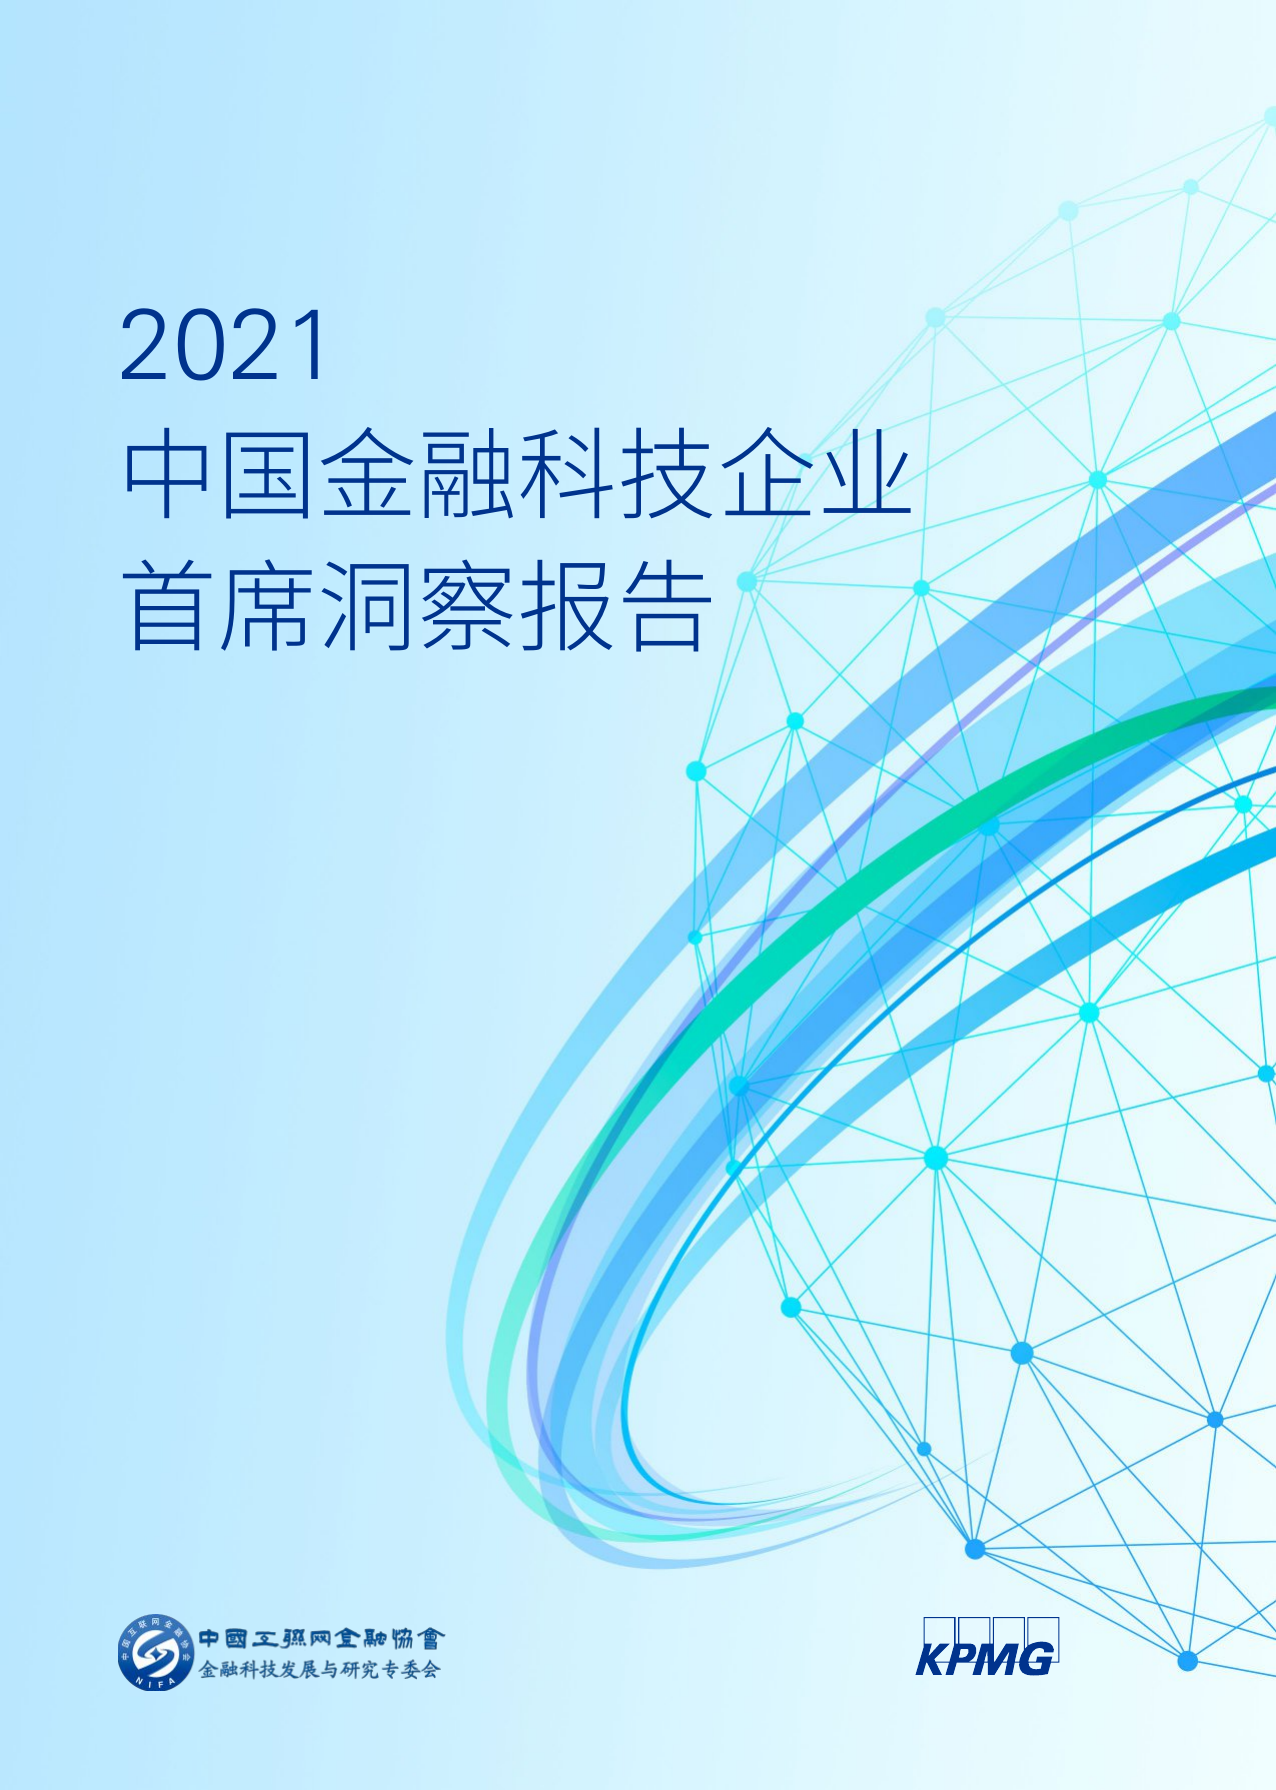 2021中国金融科技企业首席洞察报告-毕马威-2021-46页